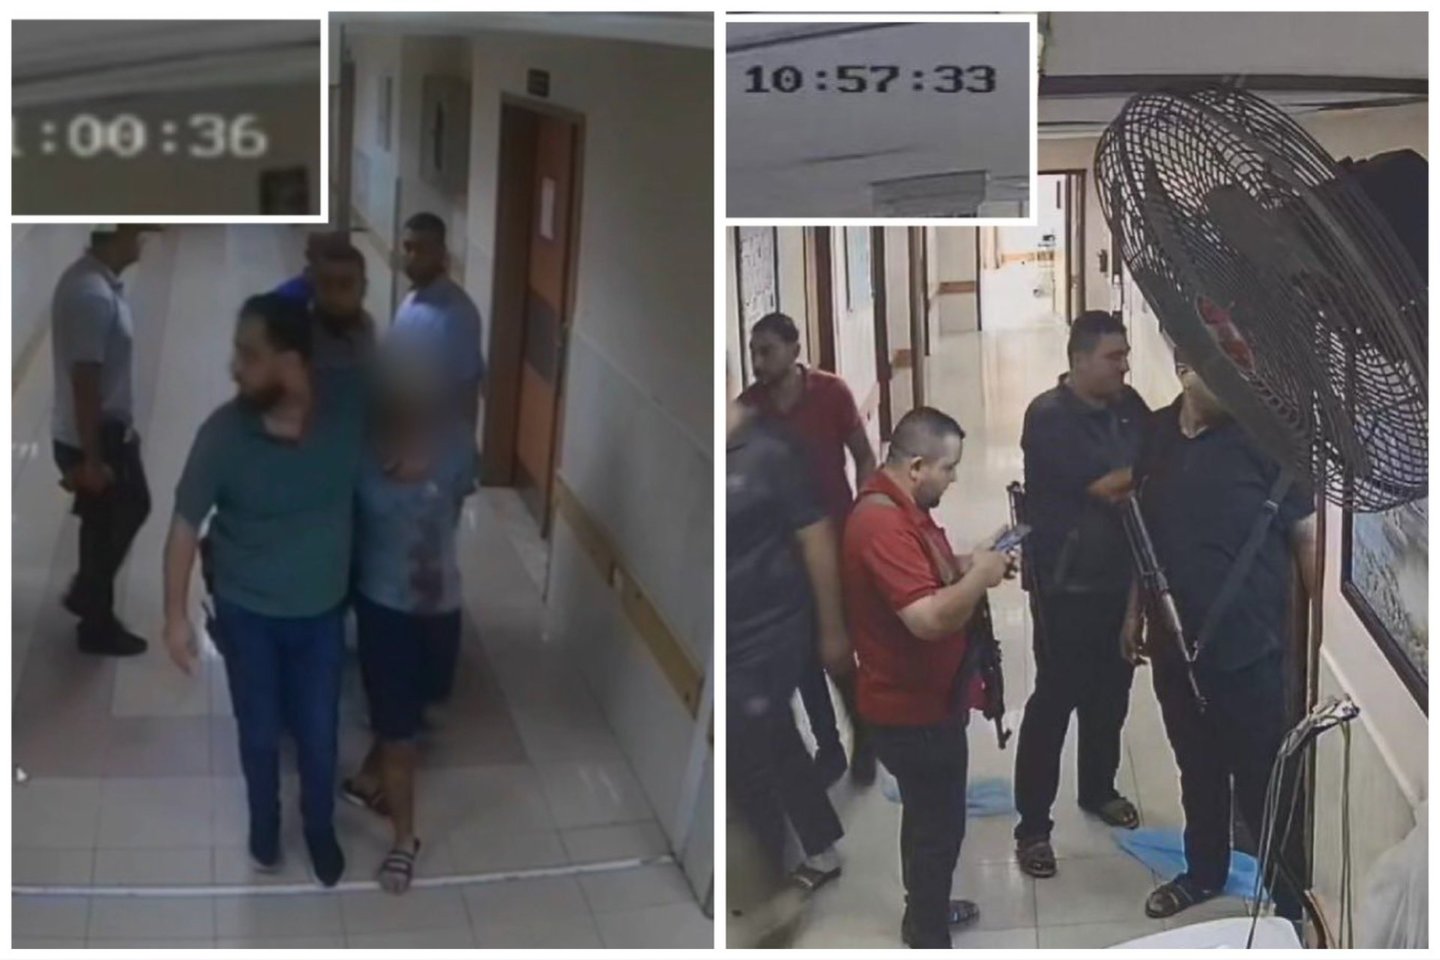  IDF paskelbti vaizdai iš Al-Šifos ligoninės.<br> IDF kadrai.